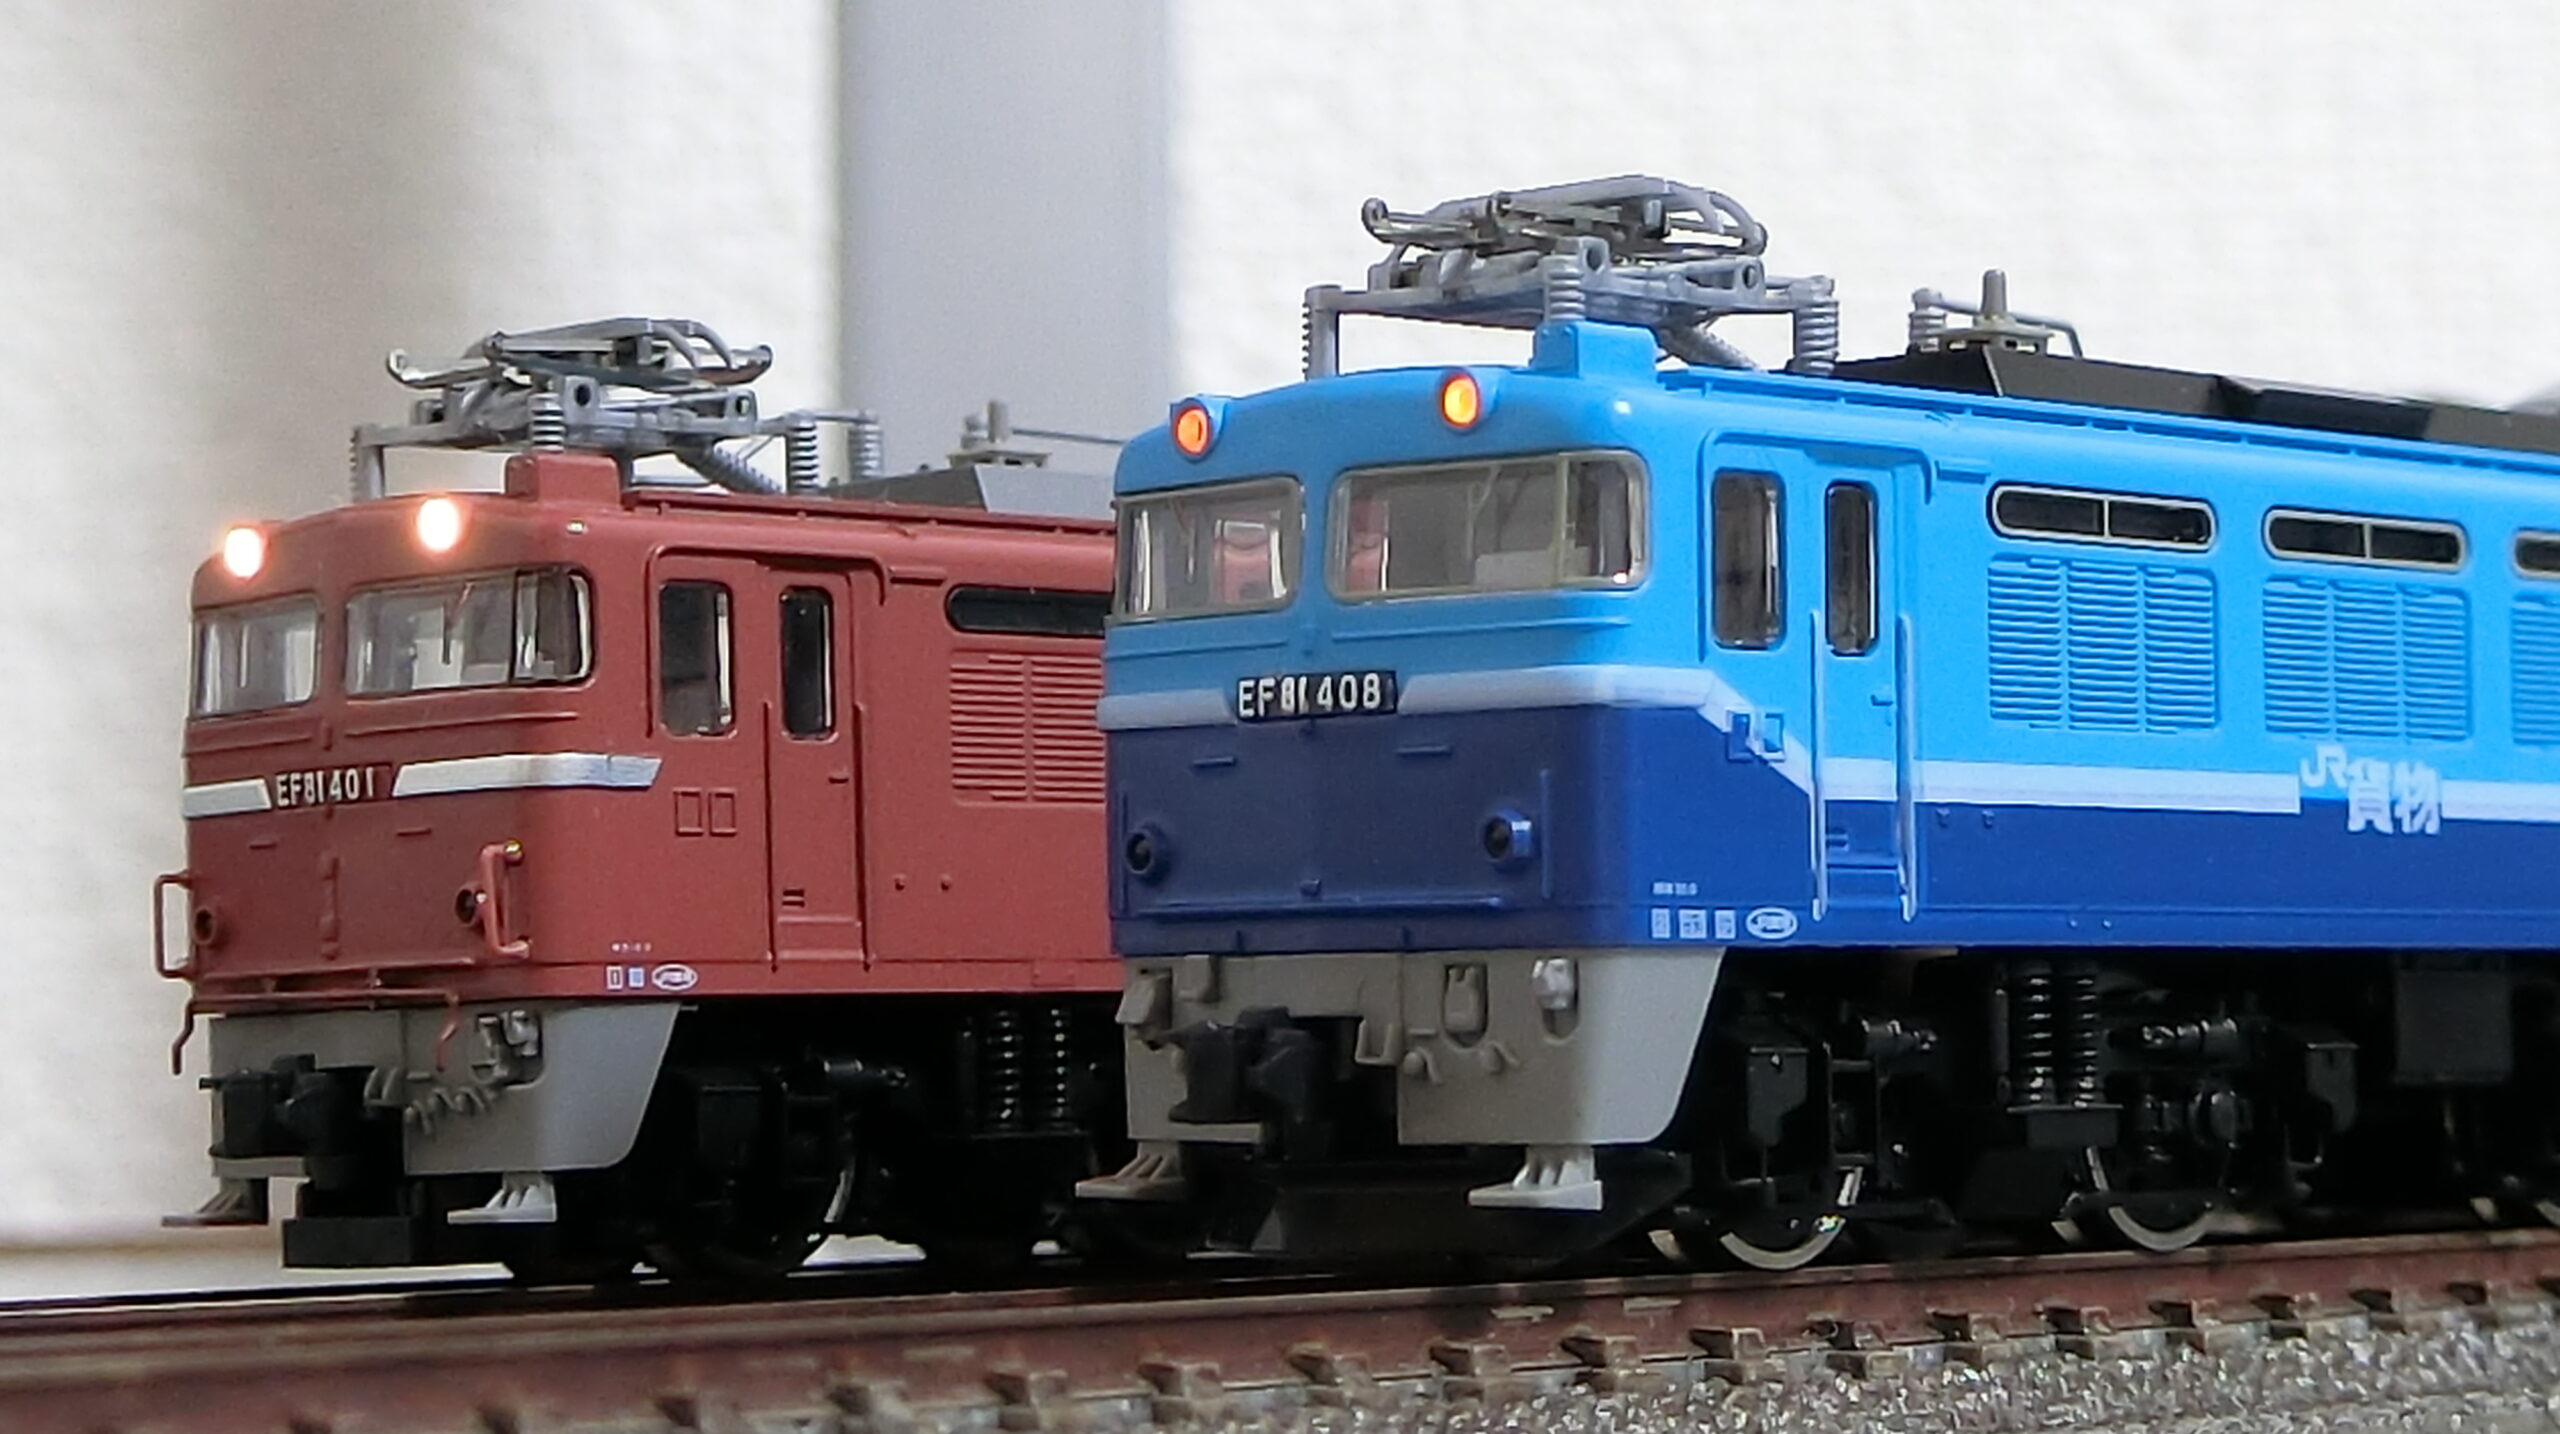 トミックスHO-107 EF81 408 JR貨物試験色 - 鉄道模型